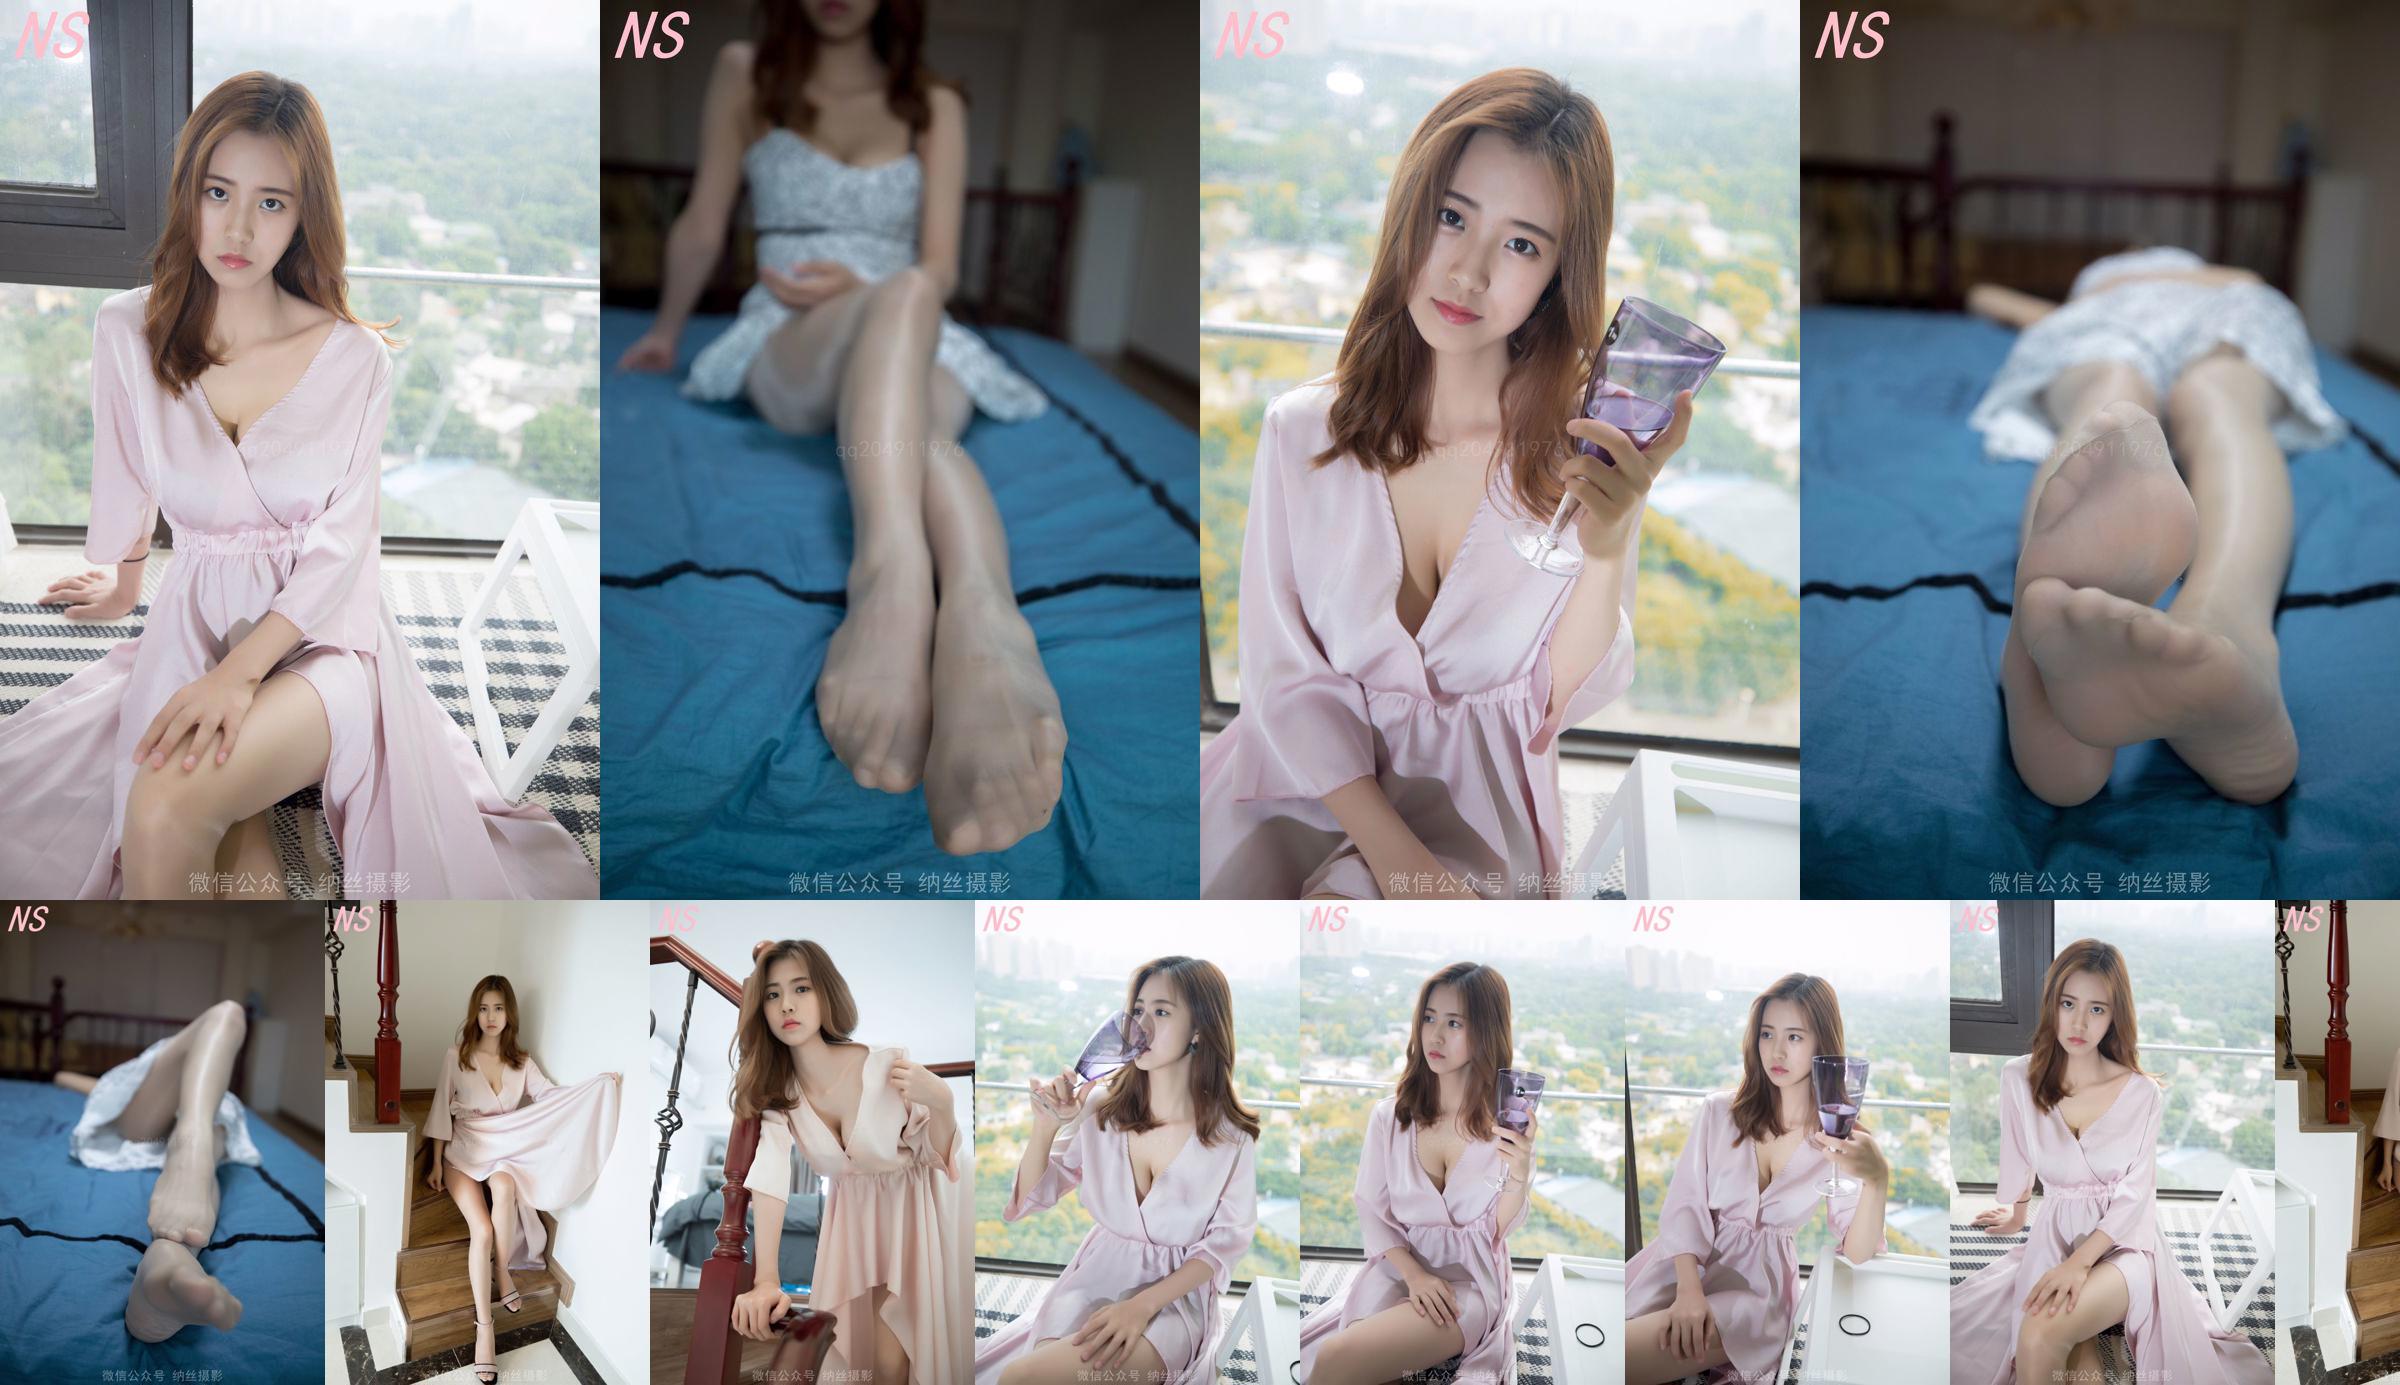 Beauty anchor Hanshuang "The Temptation of Pajamas" [Nasi Photography] No.ef468c Page 3